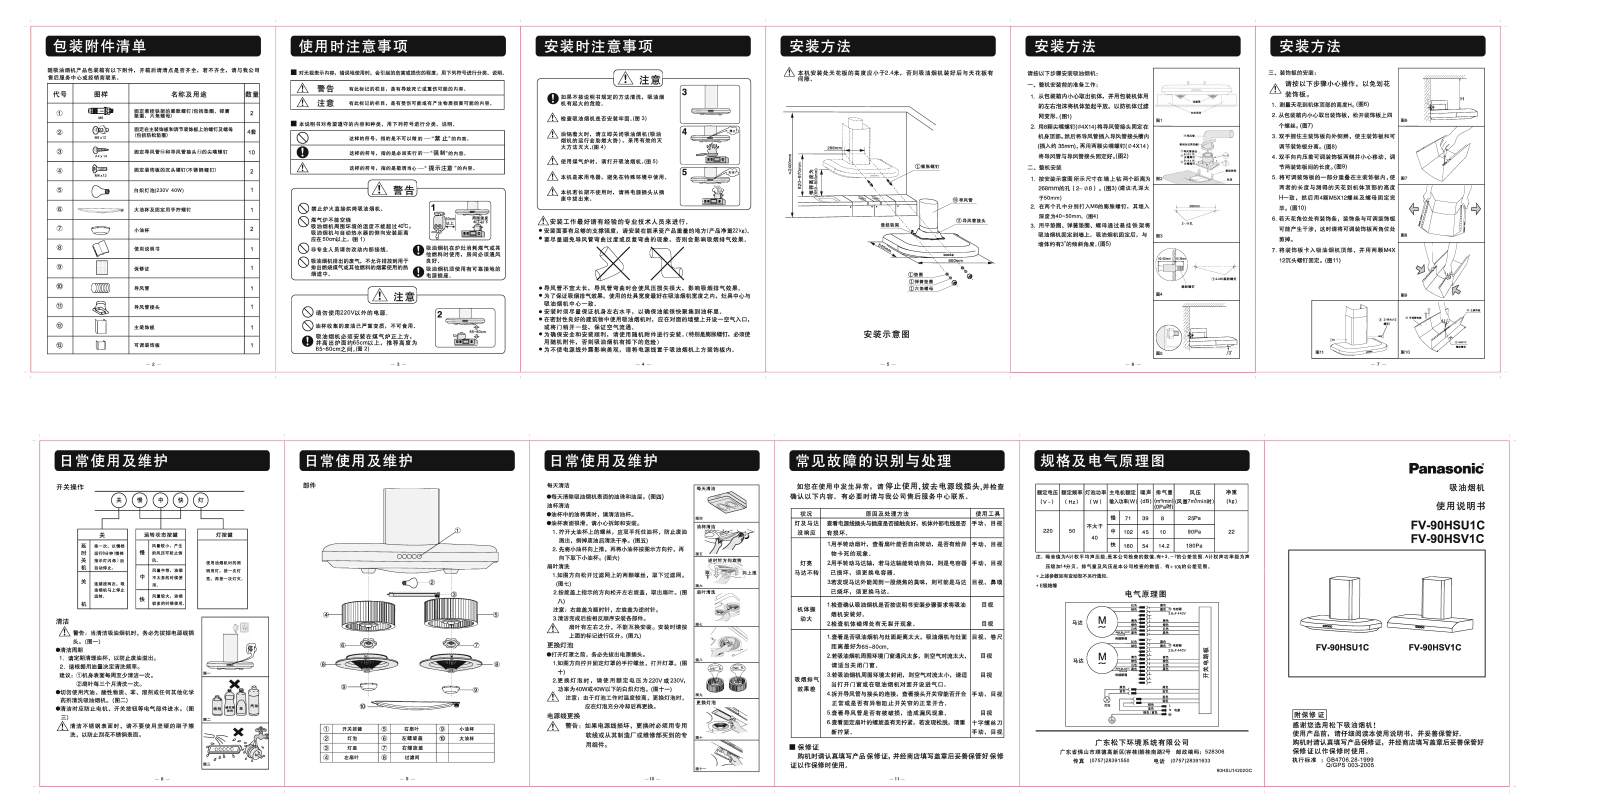 Panasonic FV-90HSU1C, FV-90HSV1C User Manual